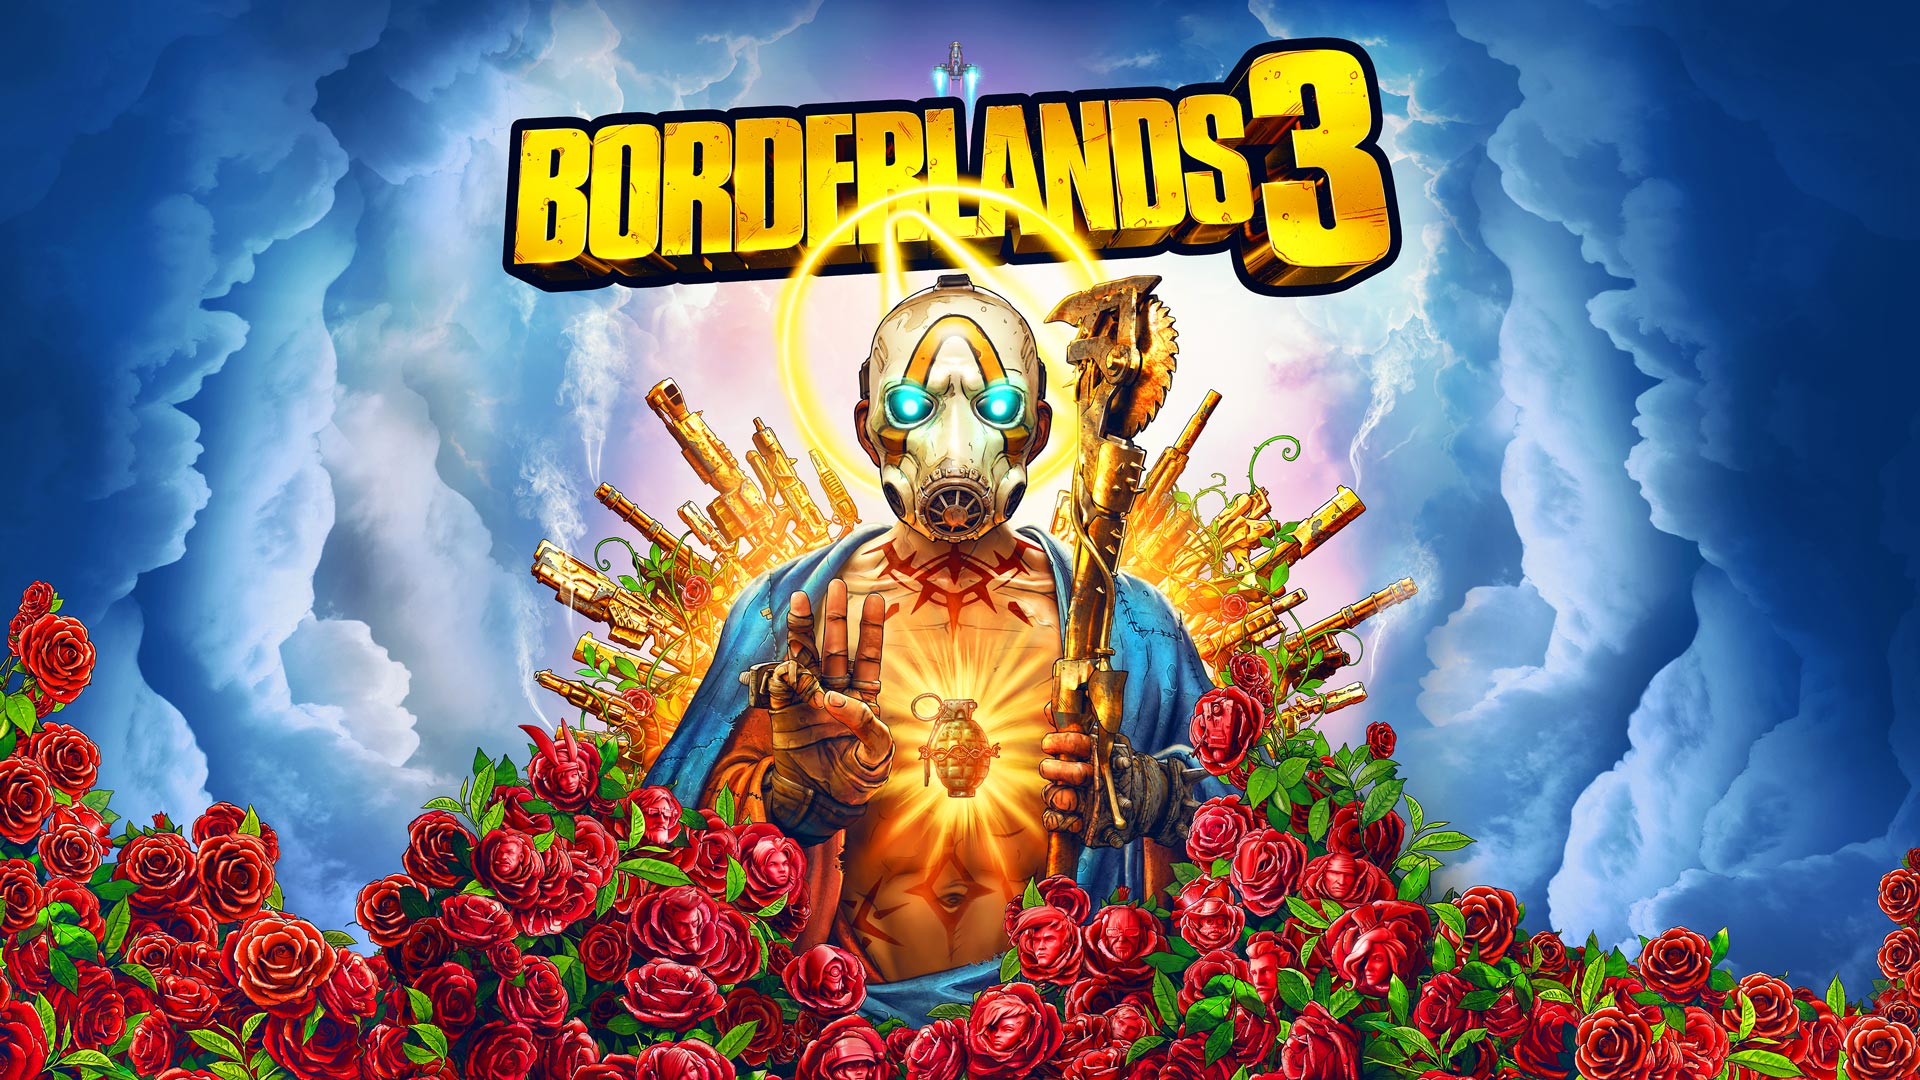 Jouez gratuitement à Borderlands 3 ce week-end sur Xbox One, PS4, PC et Google Stadia